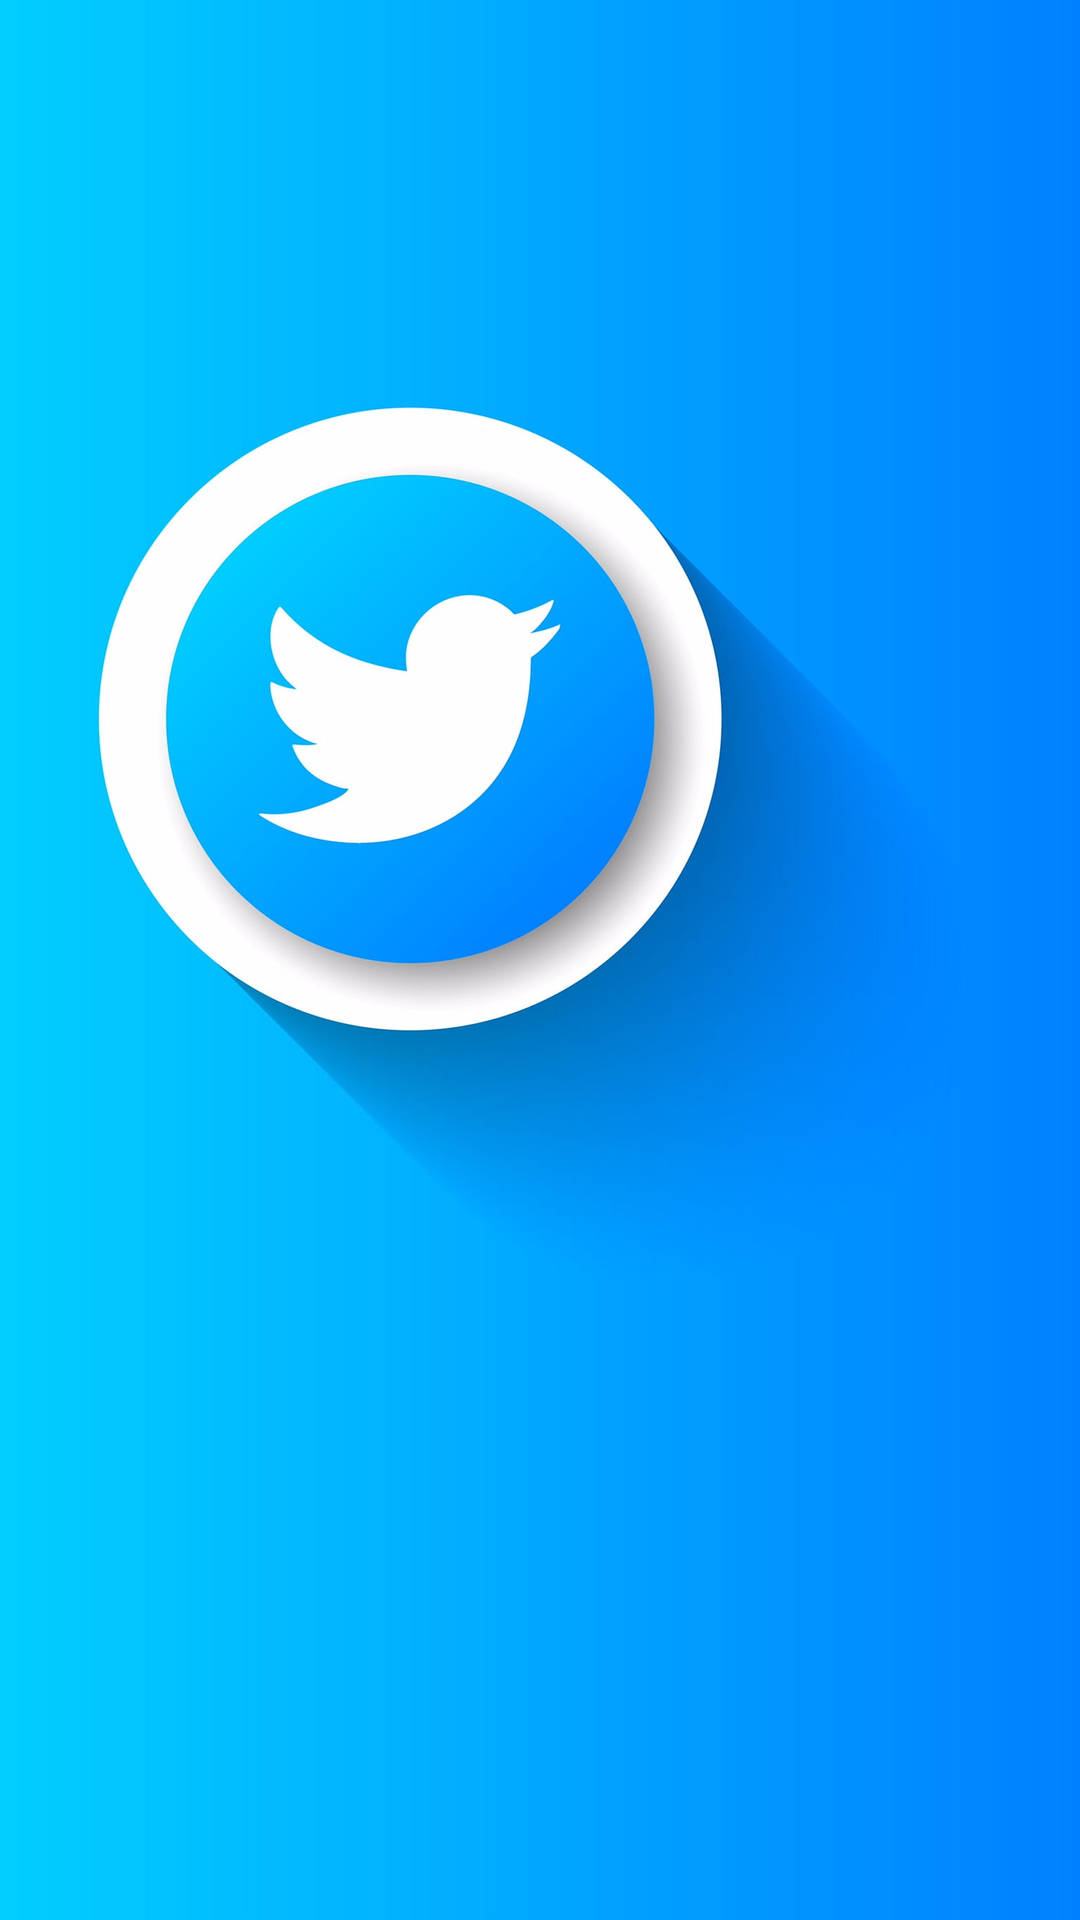 Twitter Bird Emblem